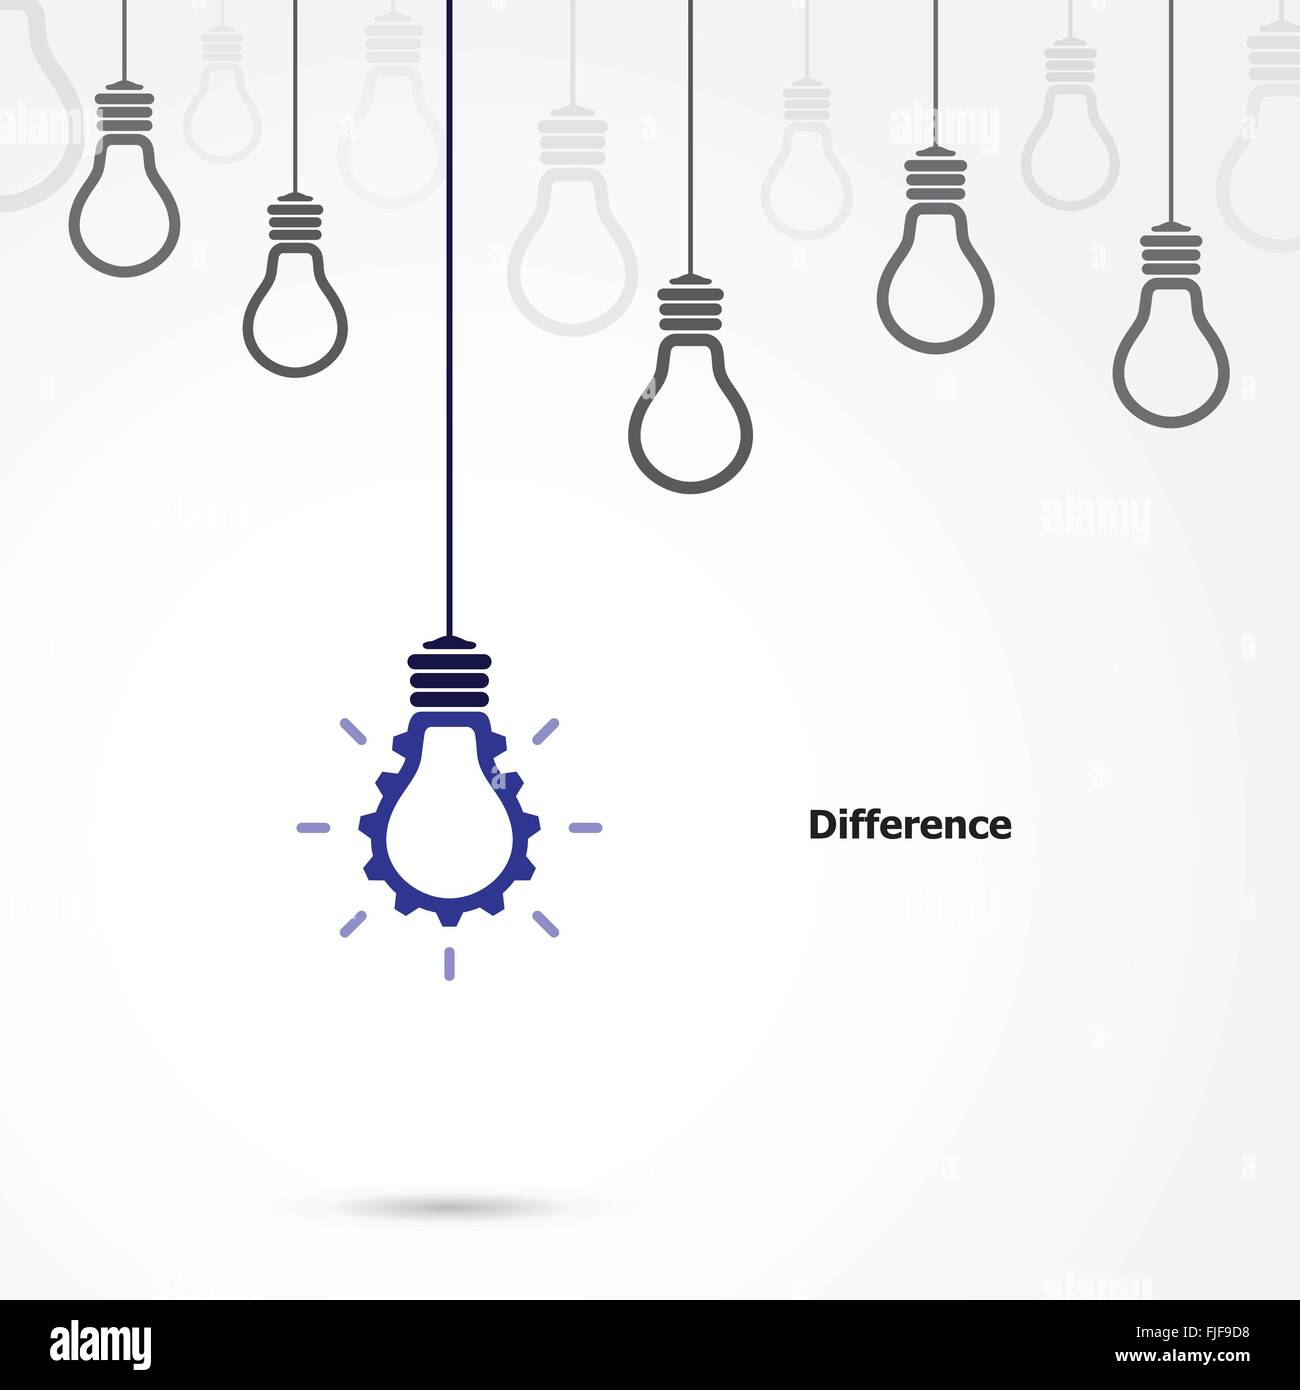 Kreative Glühbirne Symbol Zahnrad Zeichen und Unterschied Konzept, Business und Industrie-Idee. Vektor-illustration Stock Vektor